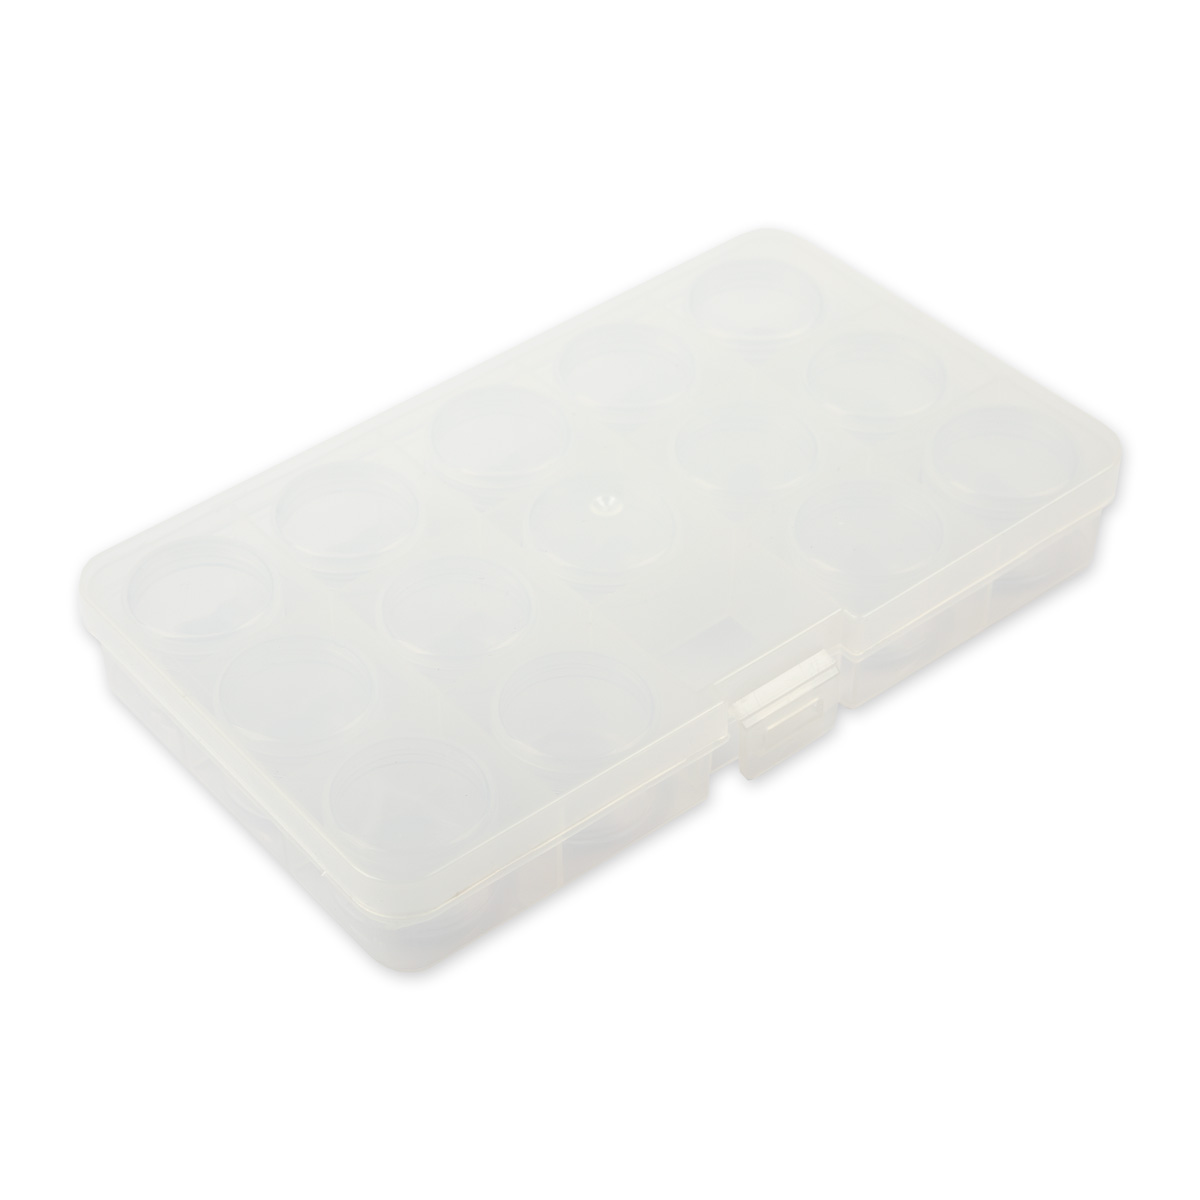 Gamma Коробка пластик для шв. принадл. OM-042-110 пластик 17.7 x 10.2 x 2.3 см прозрачная Фото 1.